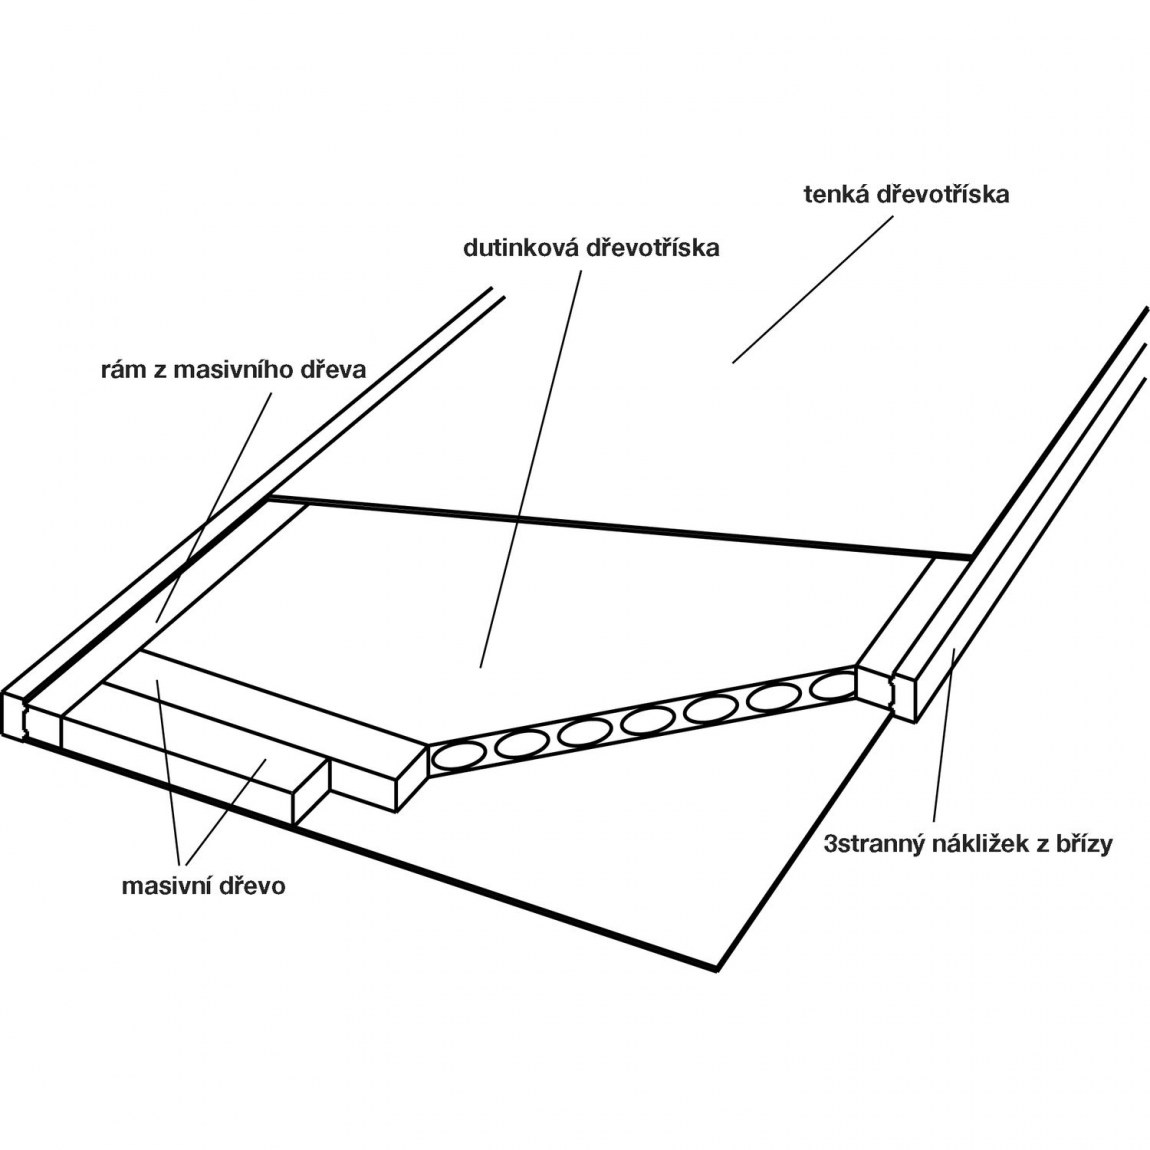 Dveřní polotovar Optimal RS, nákližek bříza - šířka 950 mm výška 2030 mm - Dílna - Outdoor Stavební potřeby